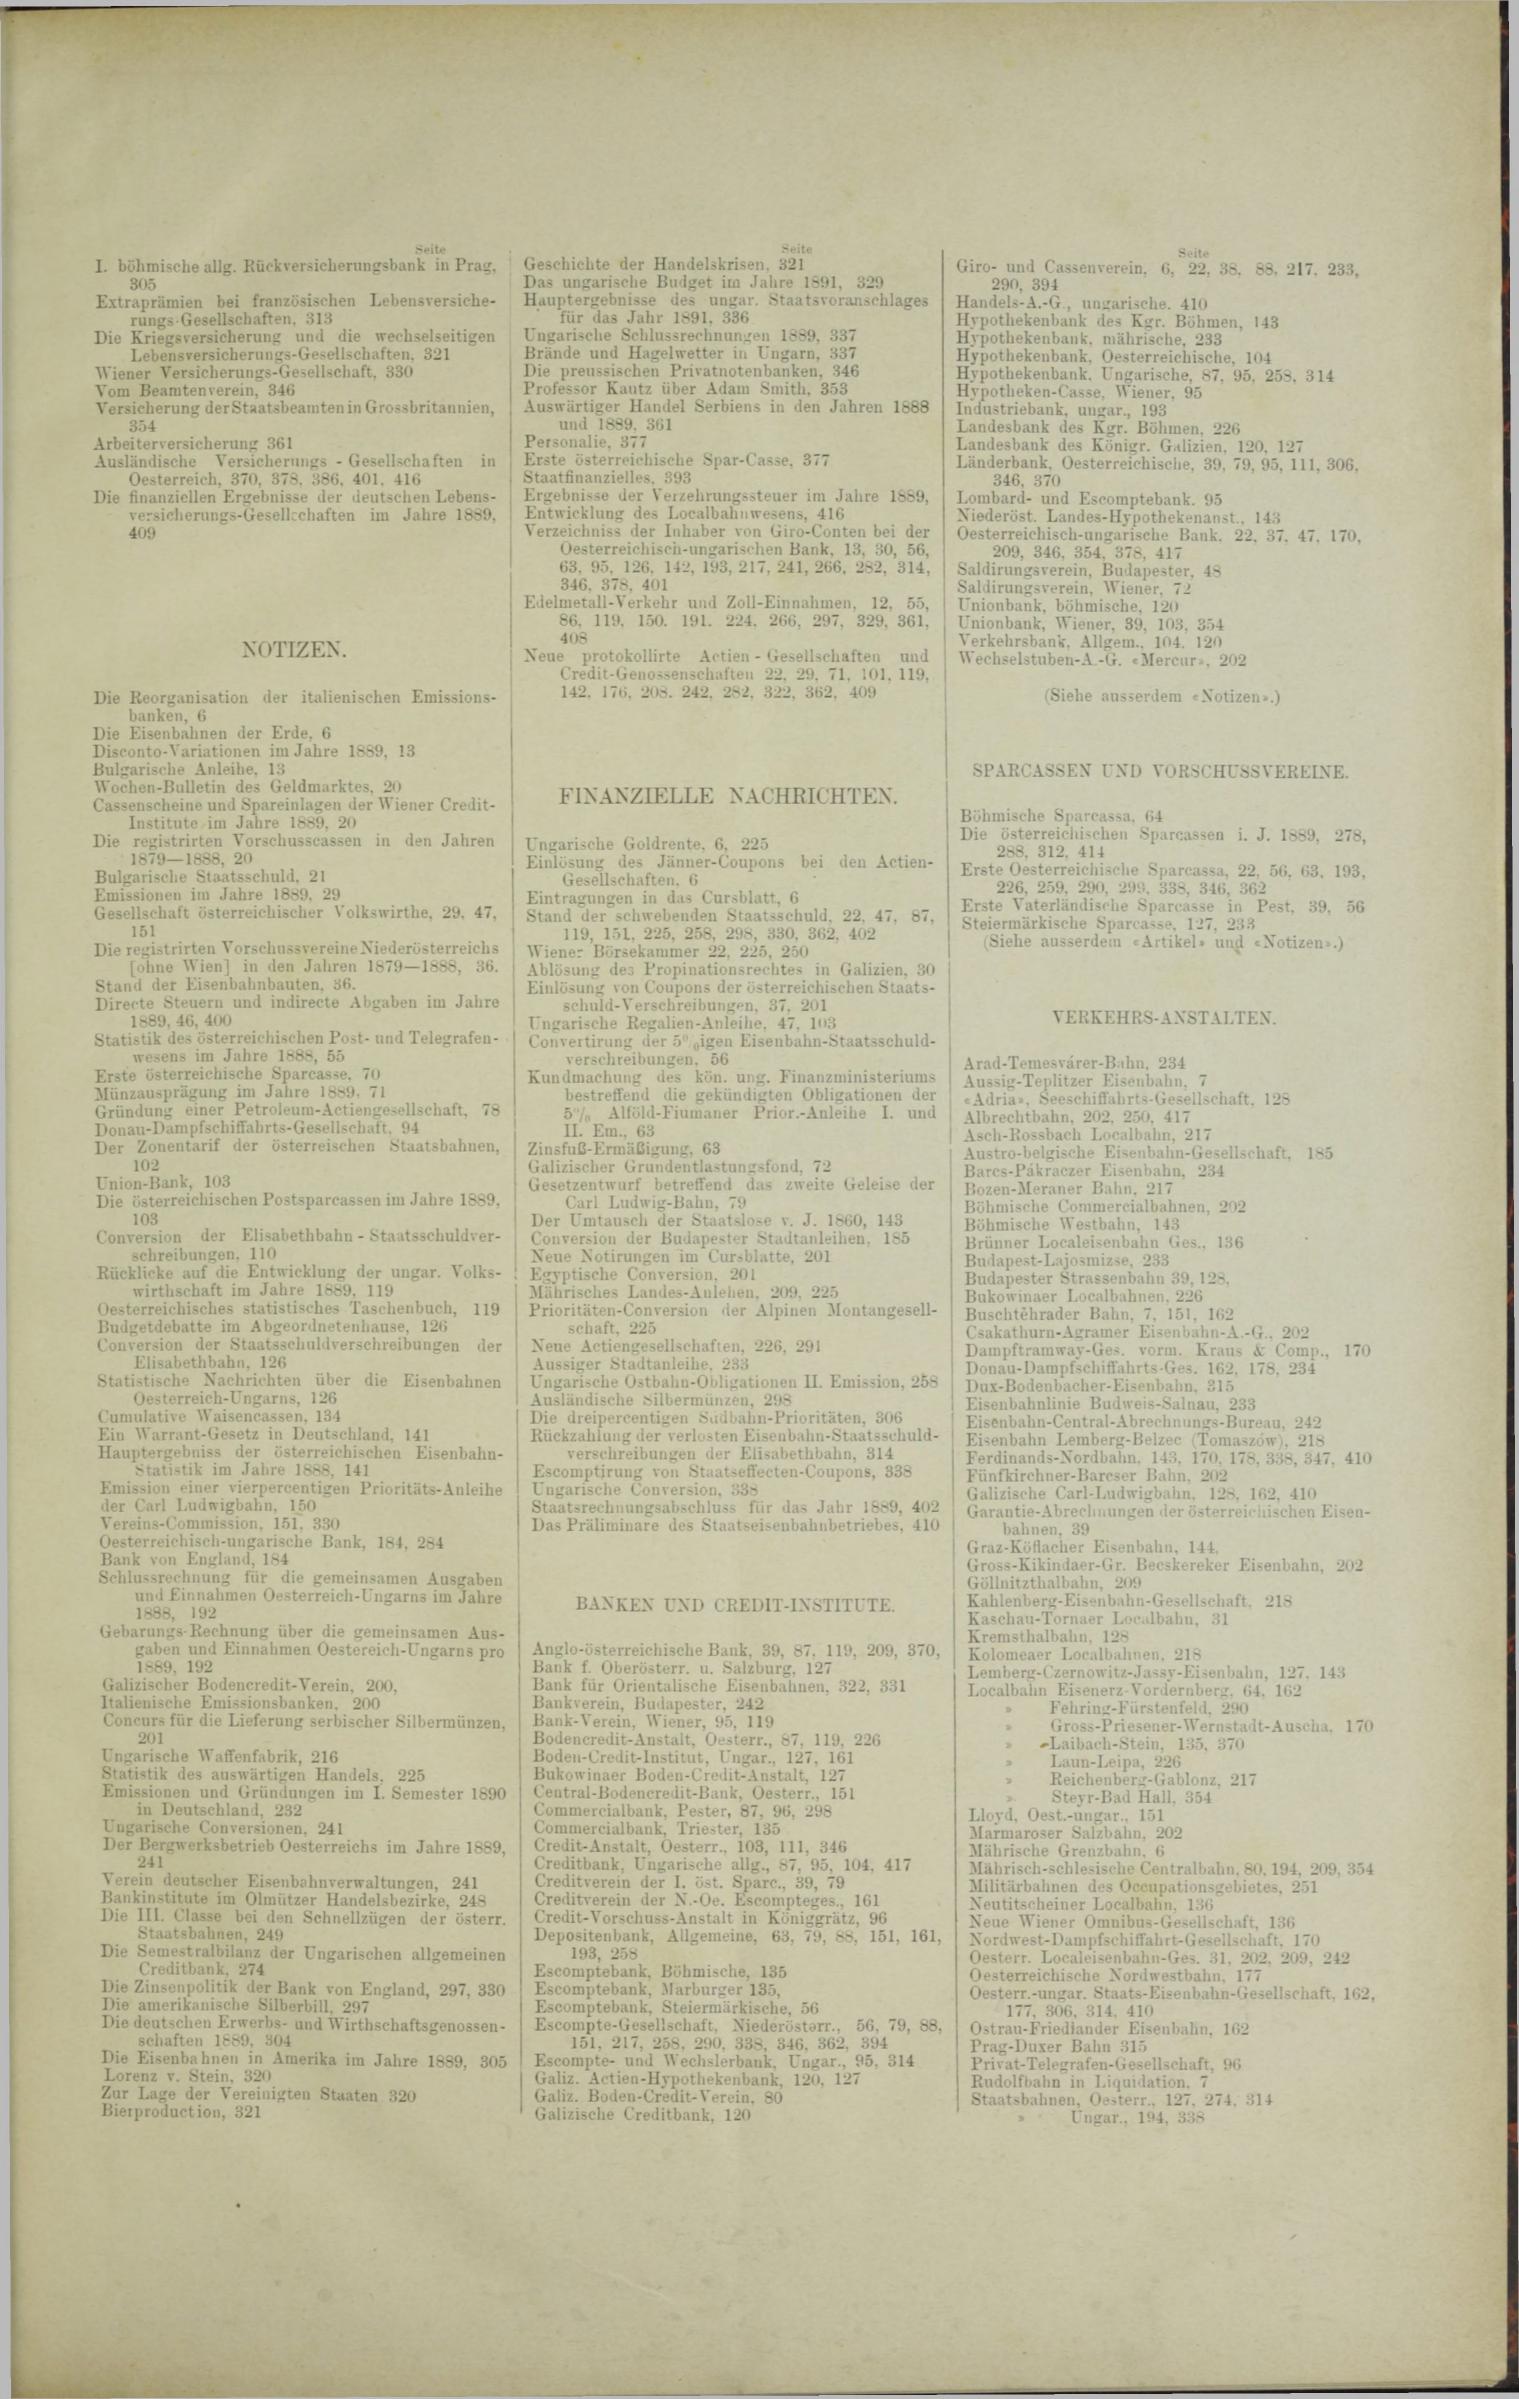 Der Tresor 30.01.1890 - Seite 11